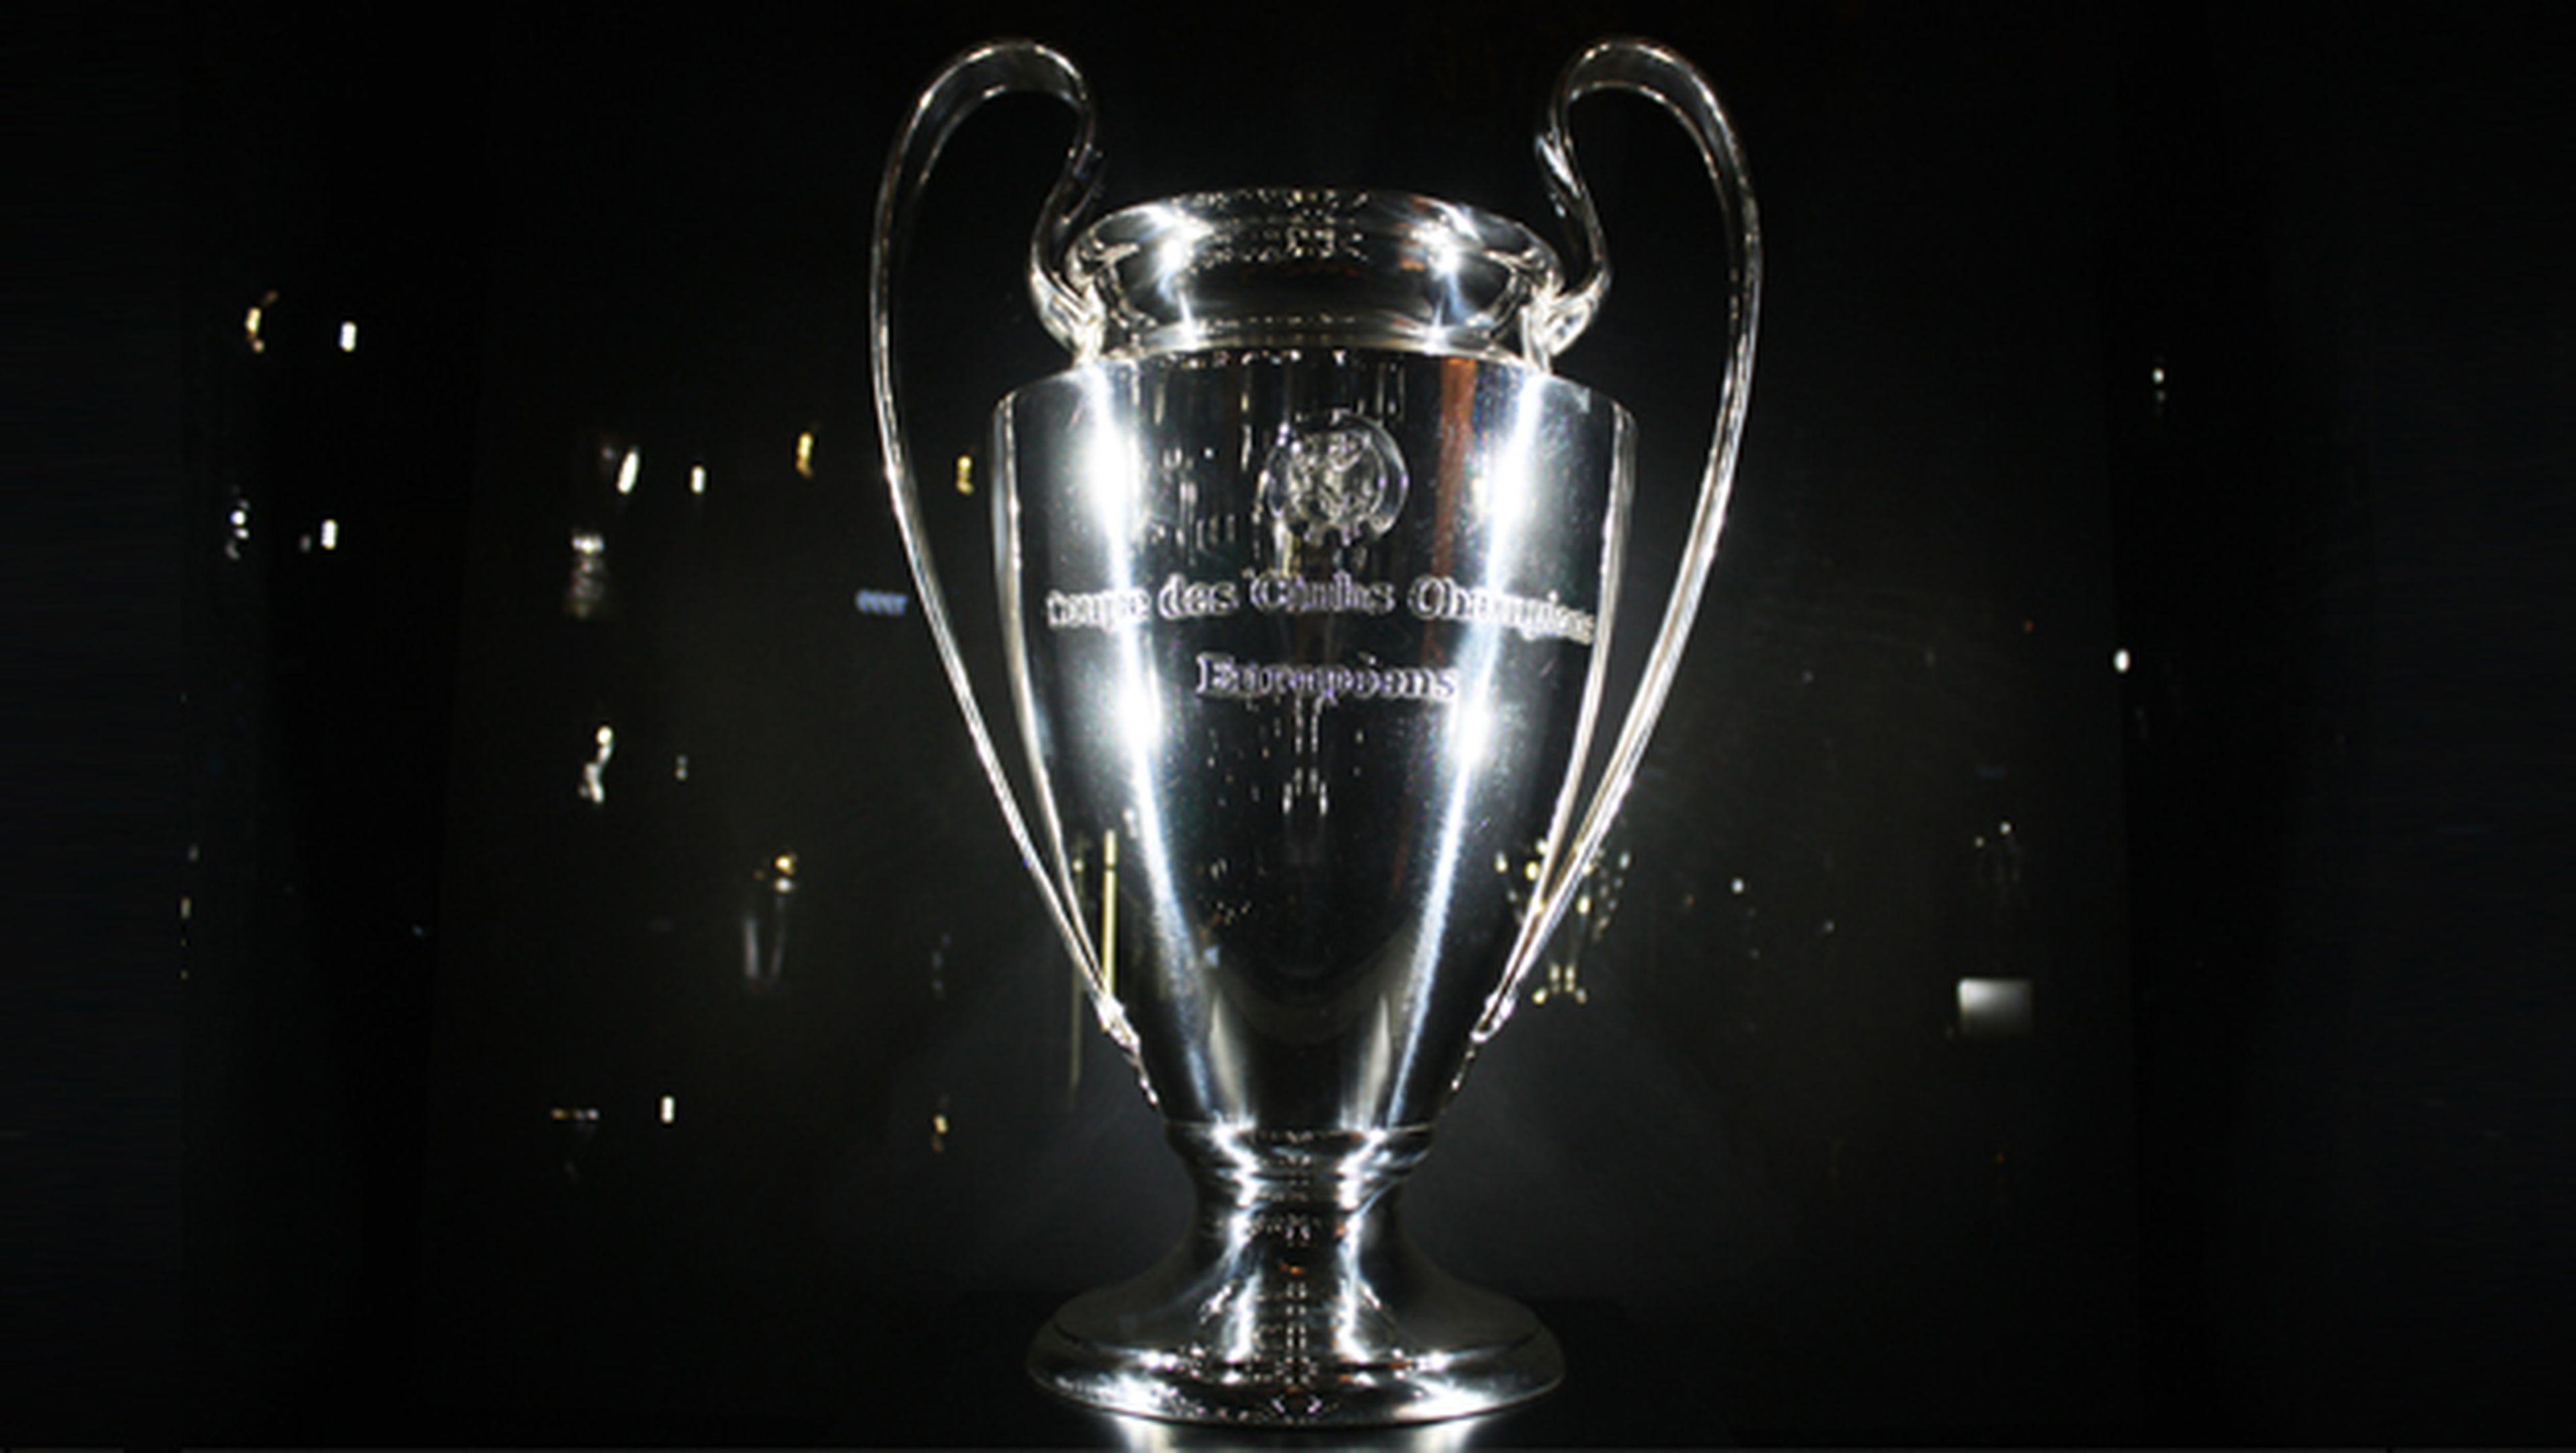 Dónde ver online el sorteo de Champions League en directo